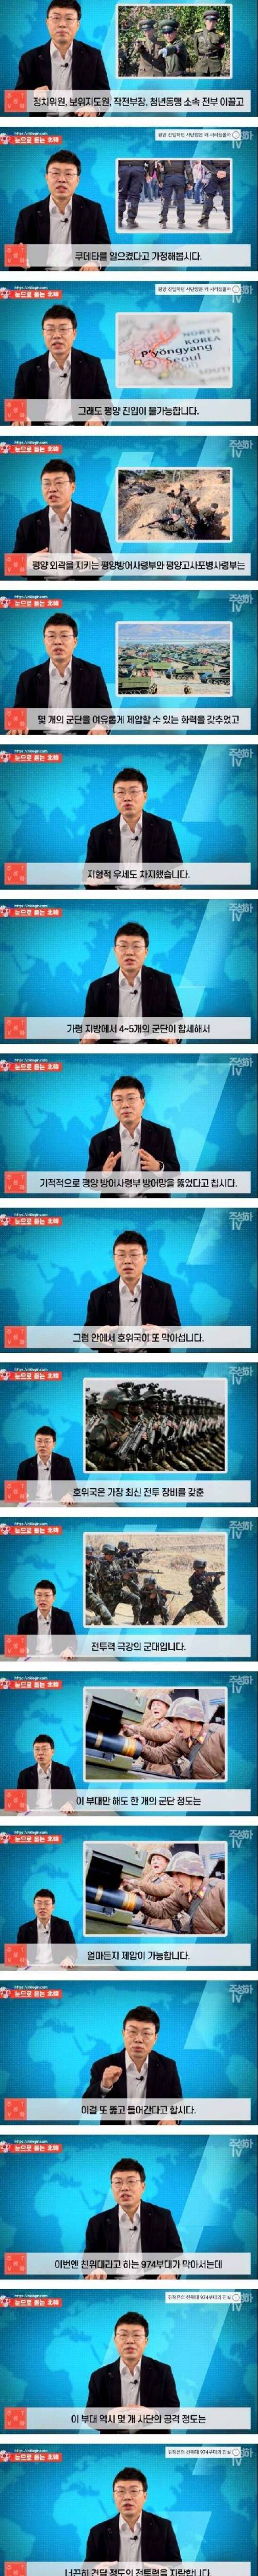 [스압] 북한이 지금까지 쿠데타를 일으키지 못한 이유.jpg